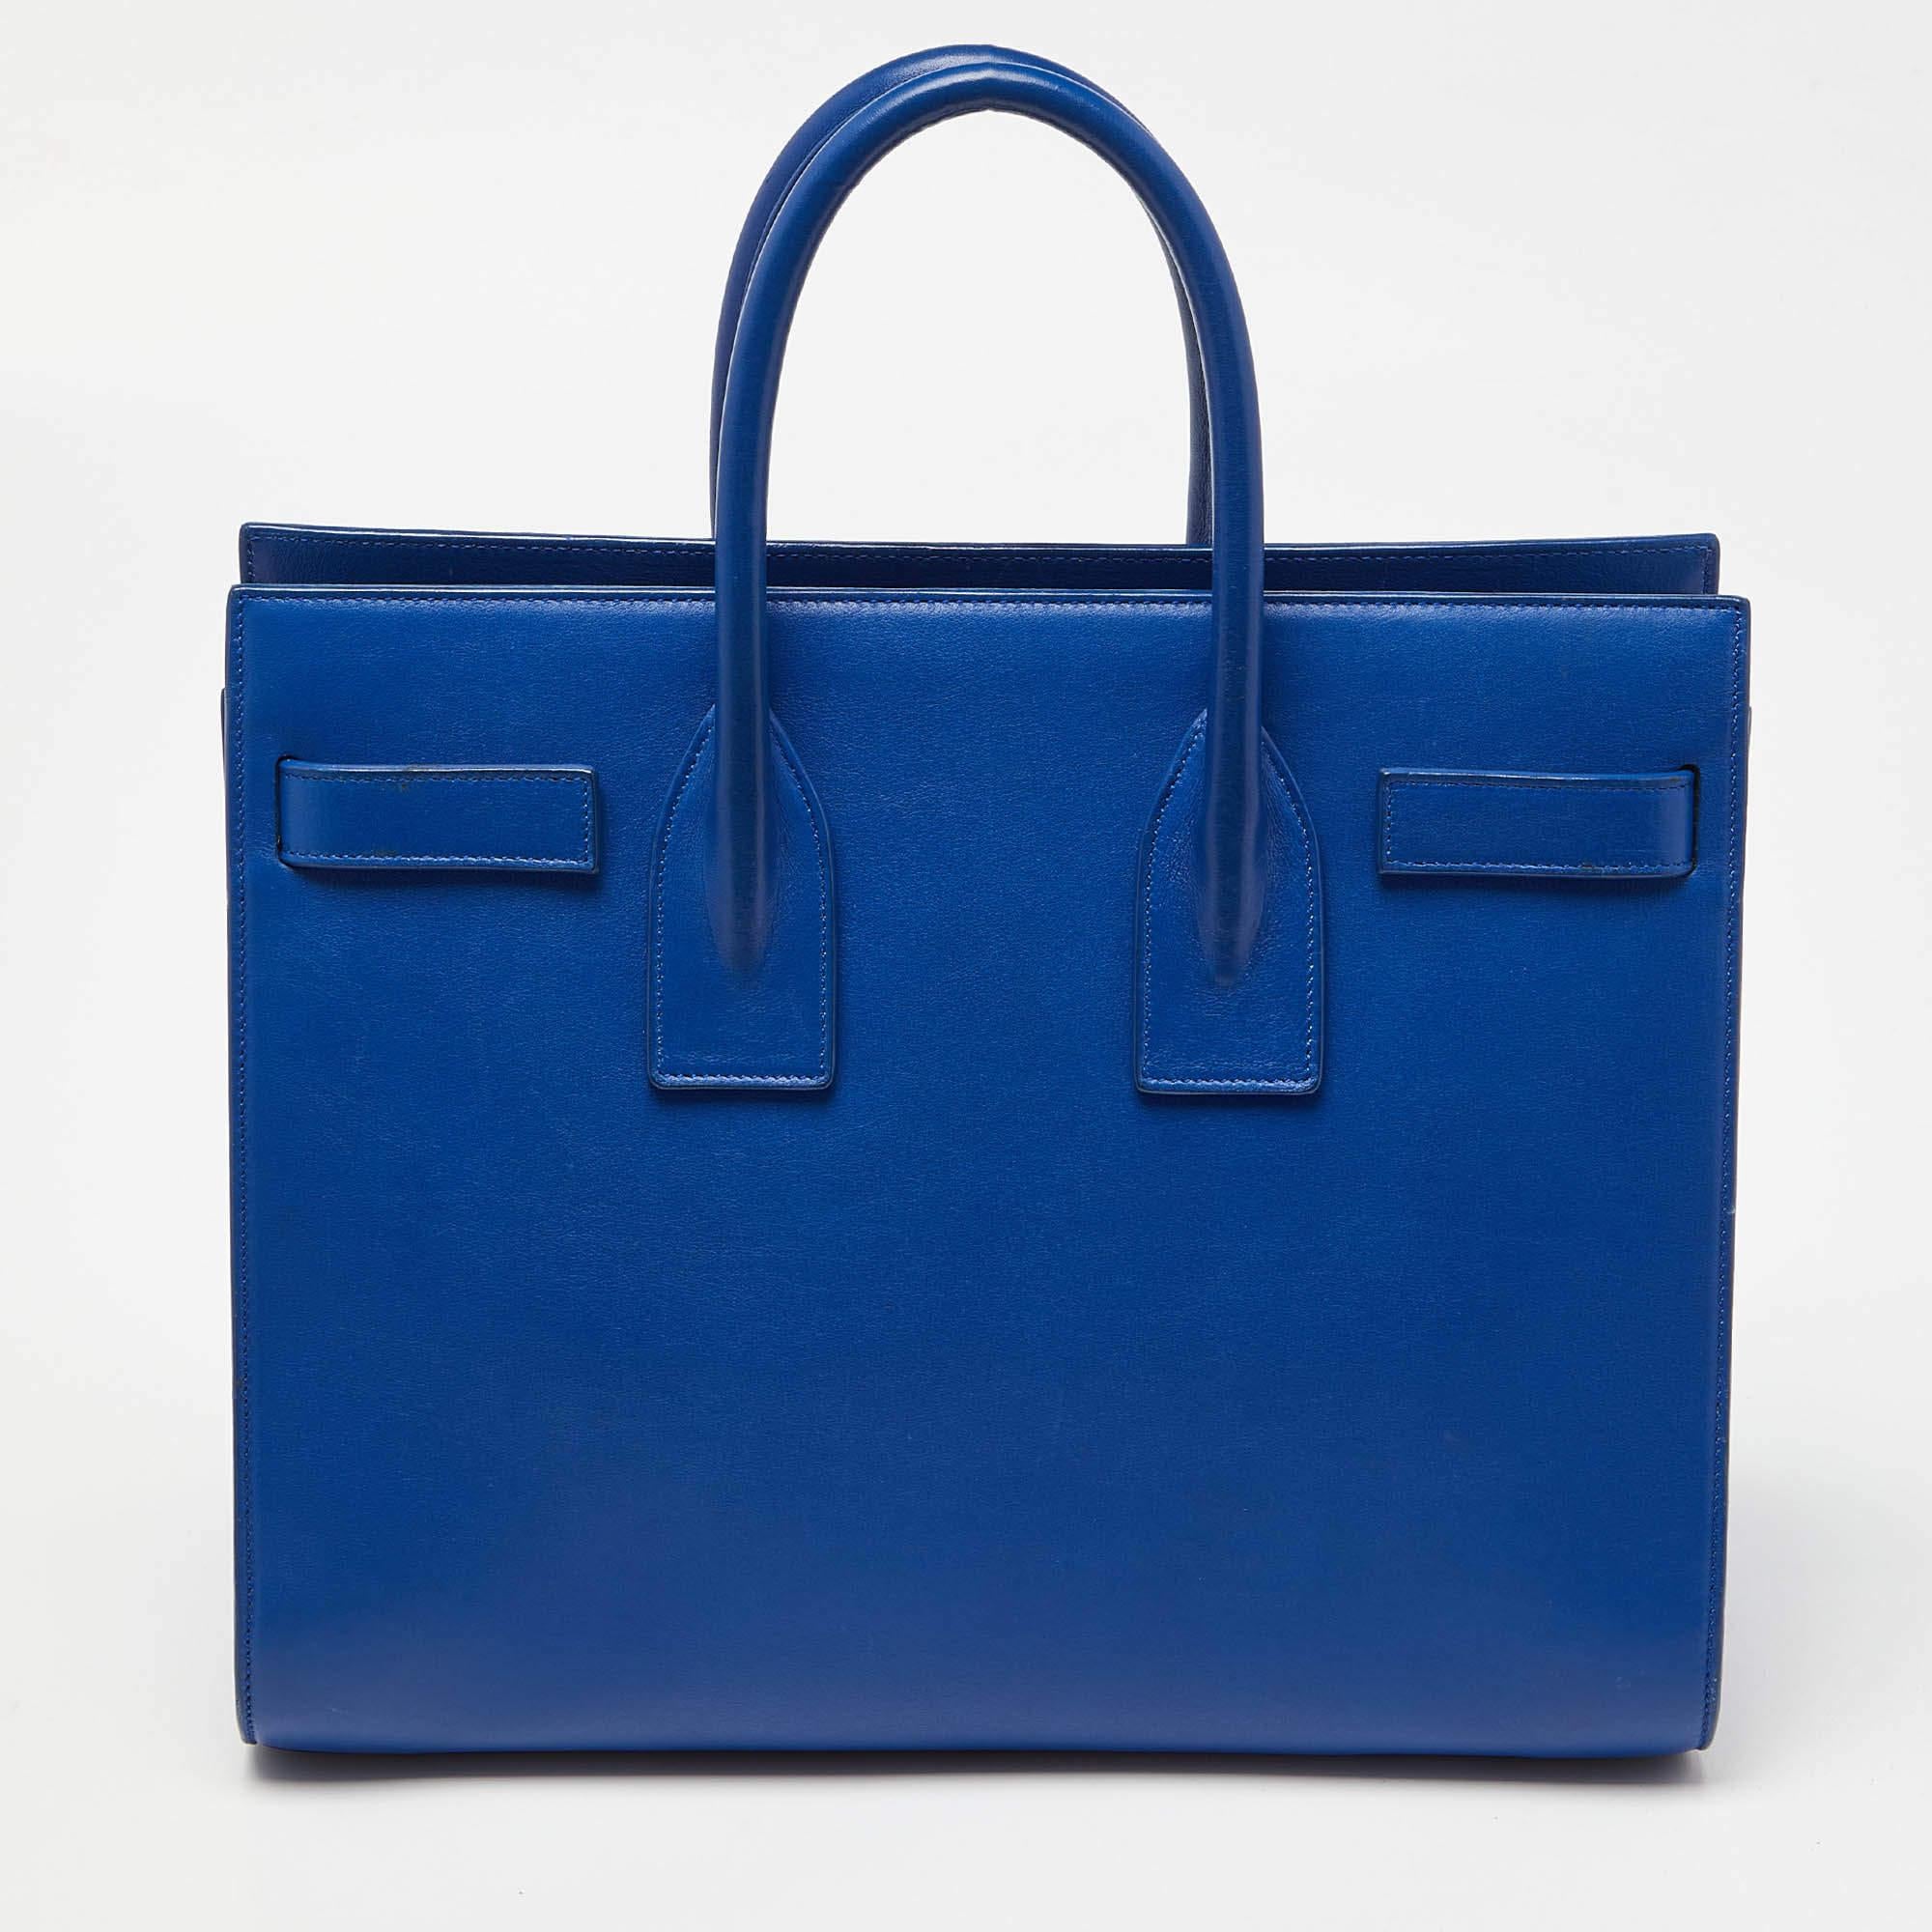 Mit dieser Tasche aus dem Hause Saint Laurent, die eine wunderbare Balance zwischen Wesentlichkeit und Opulenz schafft, sind Ihre Bedürfnisse an Handtaschen erfüllt. Er ist mit praktischen Funktionen ausgestattet, die den Alltag